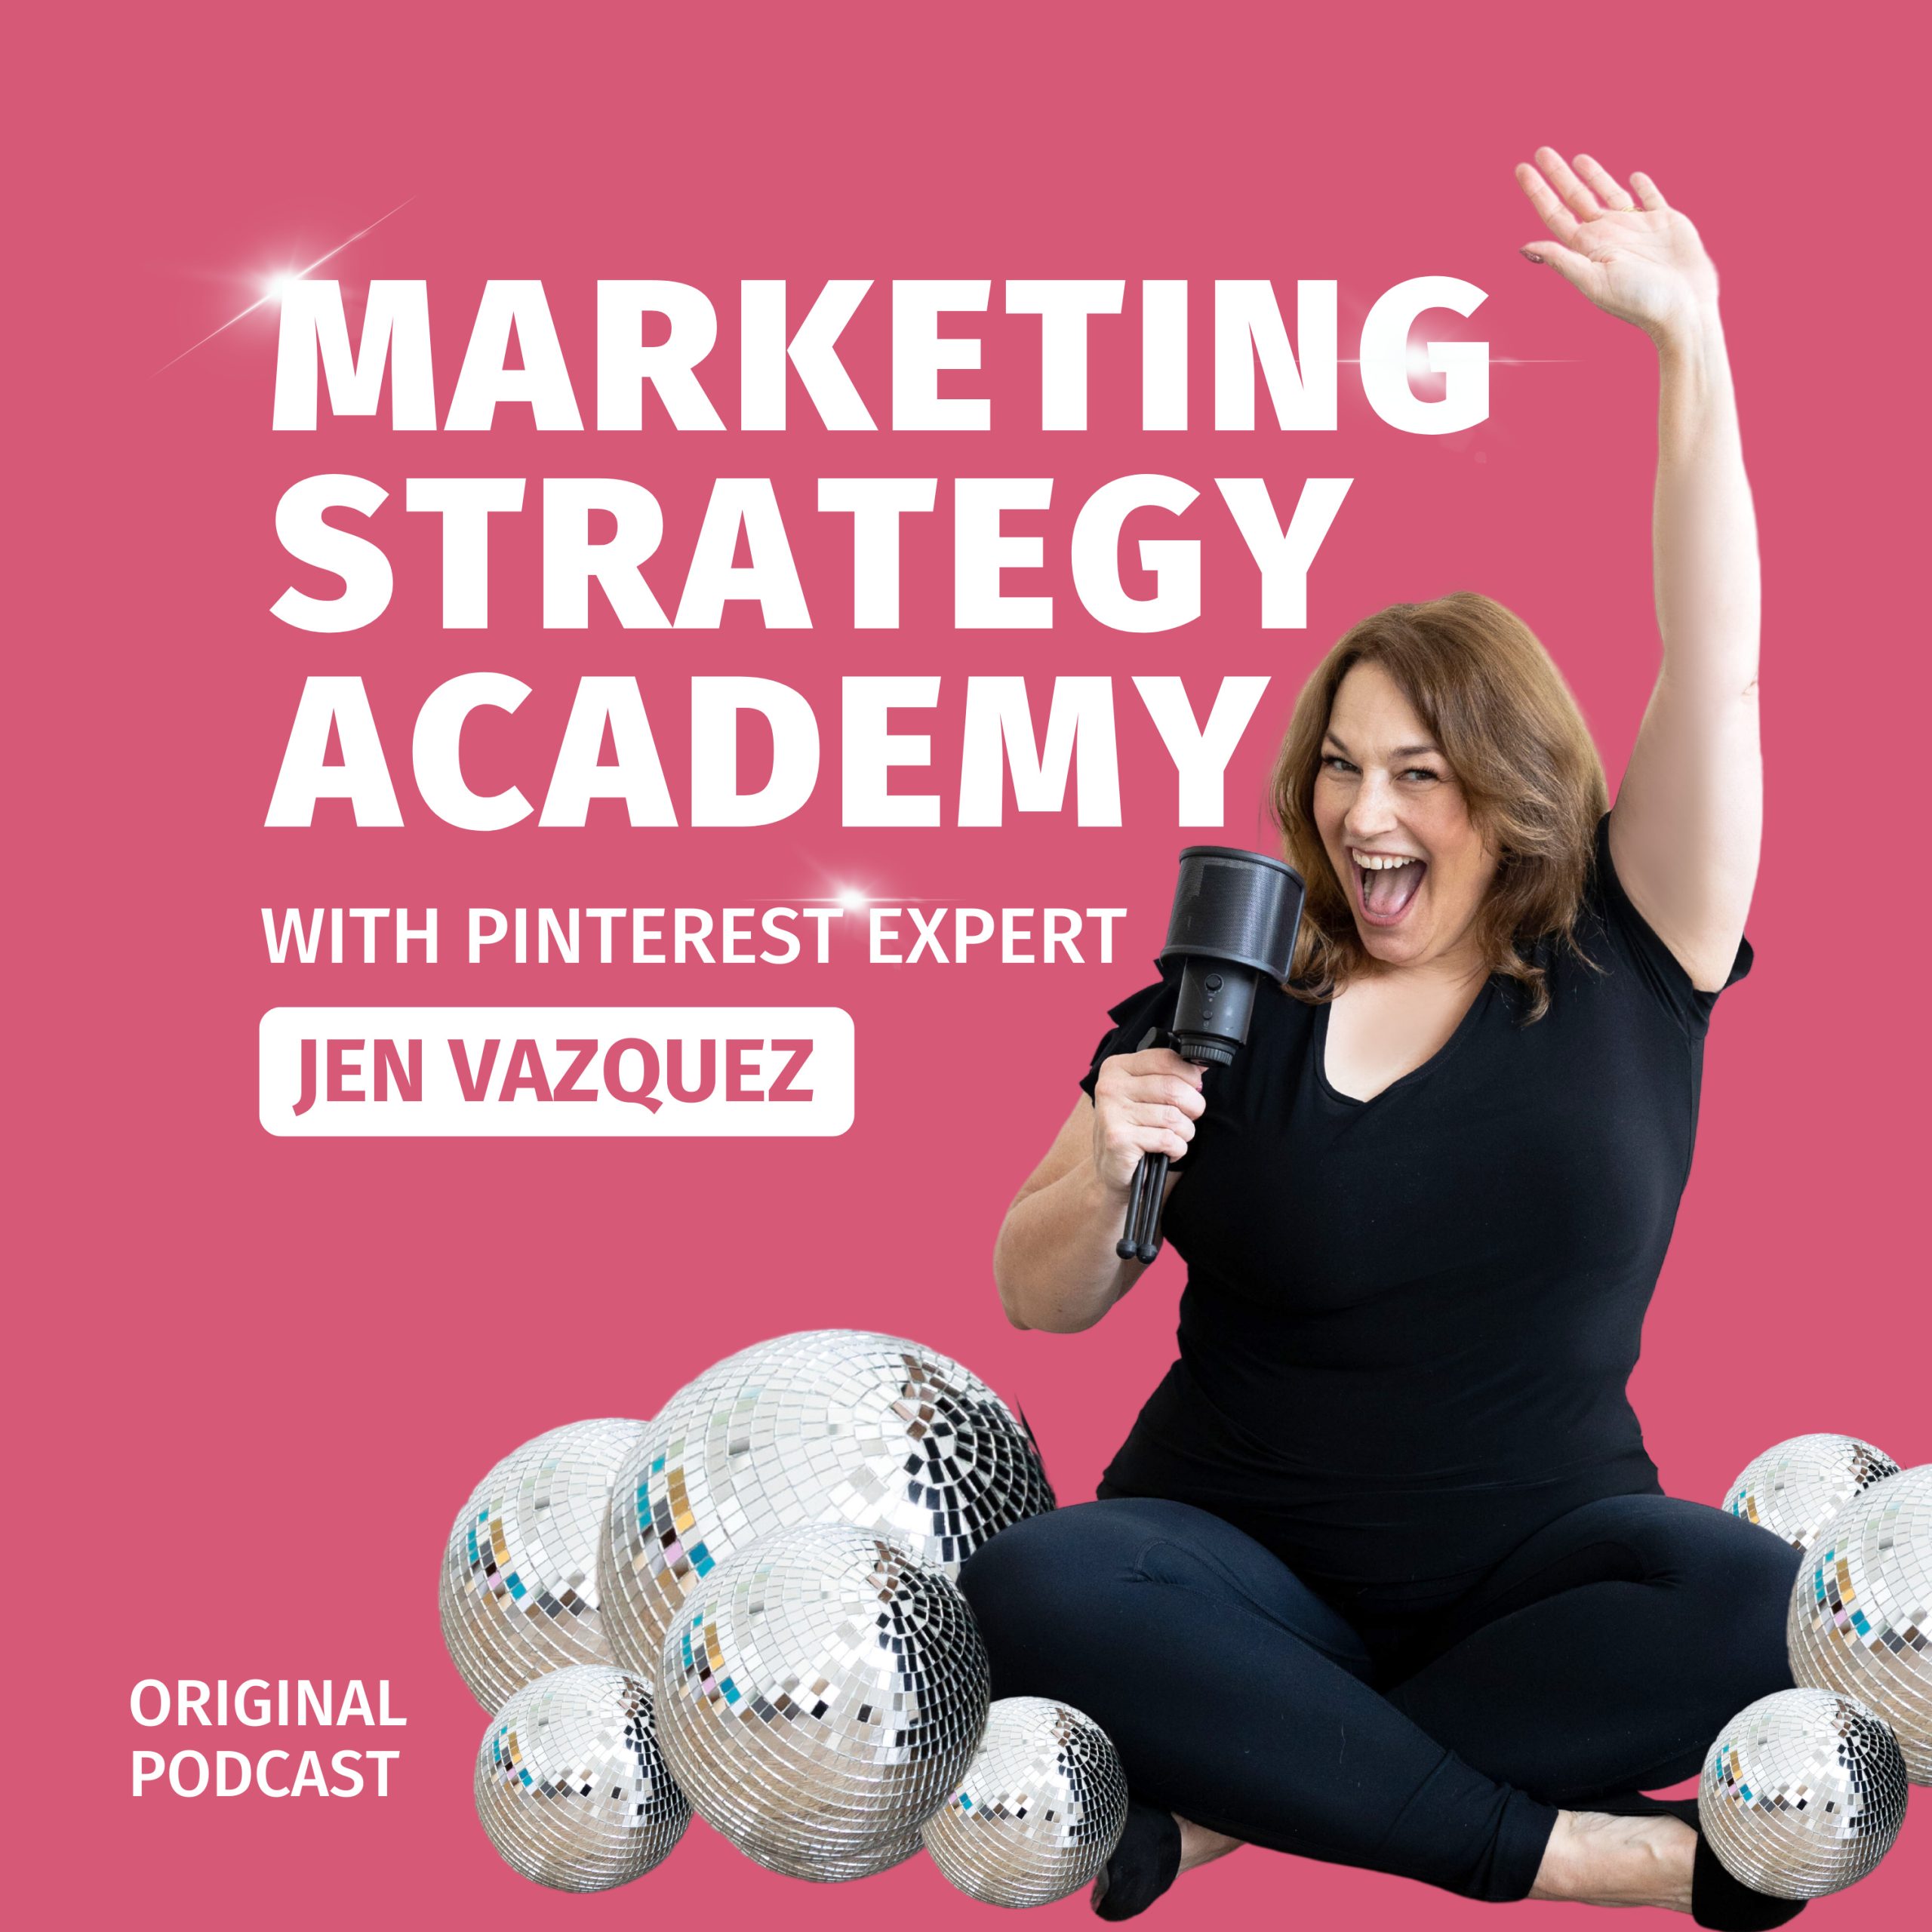 Jen Vazquez Media Marketing Strategy Academy Podcast